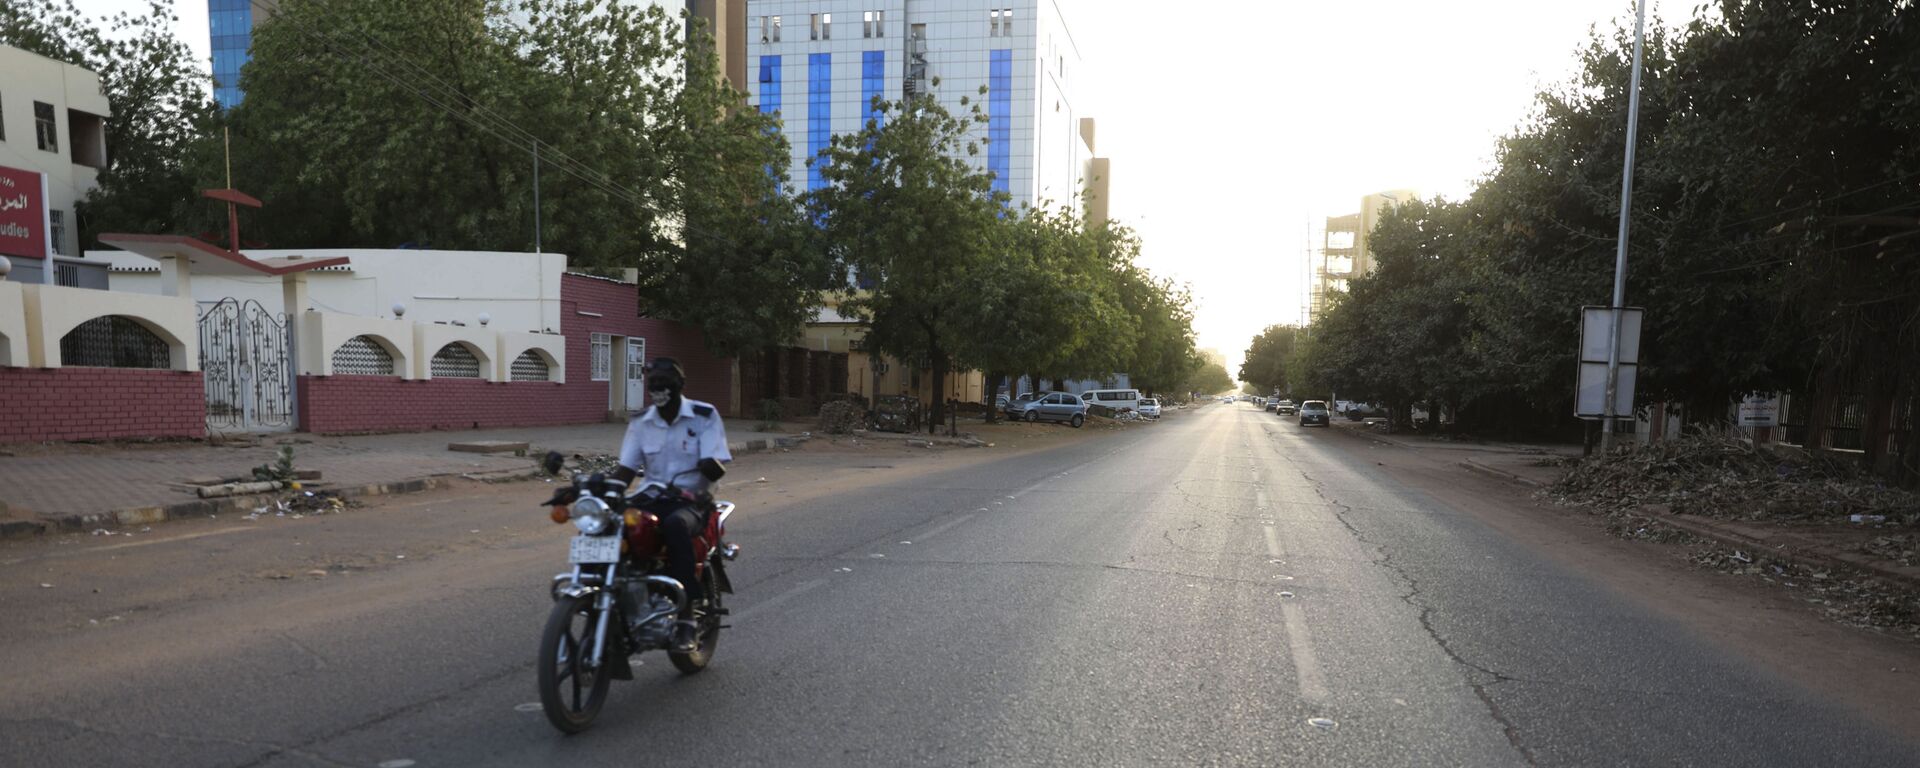 شارع فارغ في الخرطوم بالسودان حيث أمرت الحكومة السودانية بحظر التجول ليلاً لمنع انتشار فيروس كورونا - سبوتنيك عربي, 1920, 20.04.2021